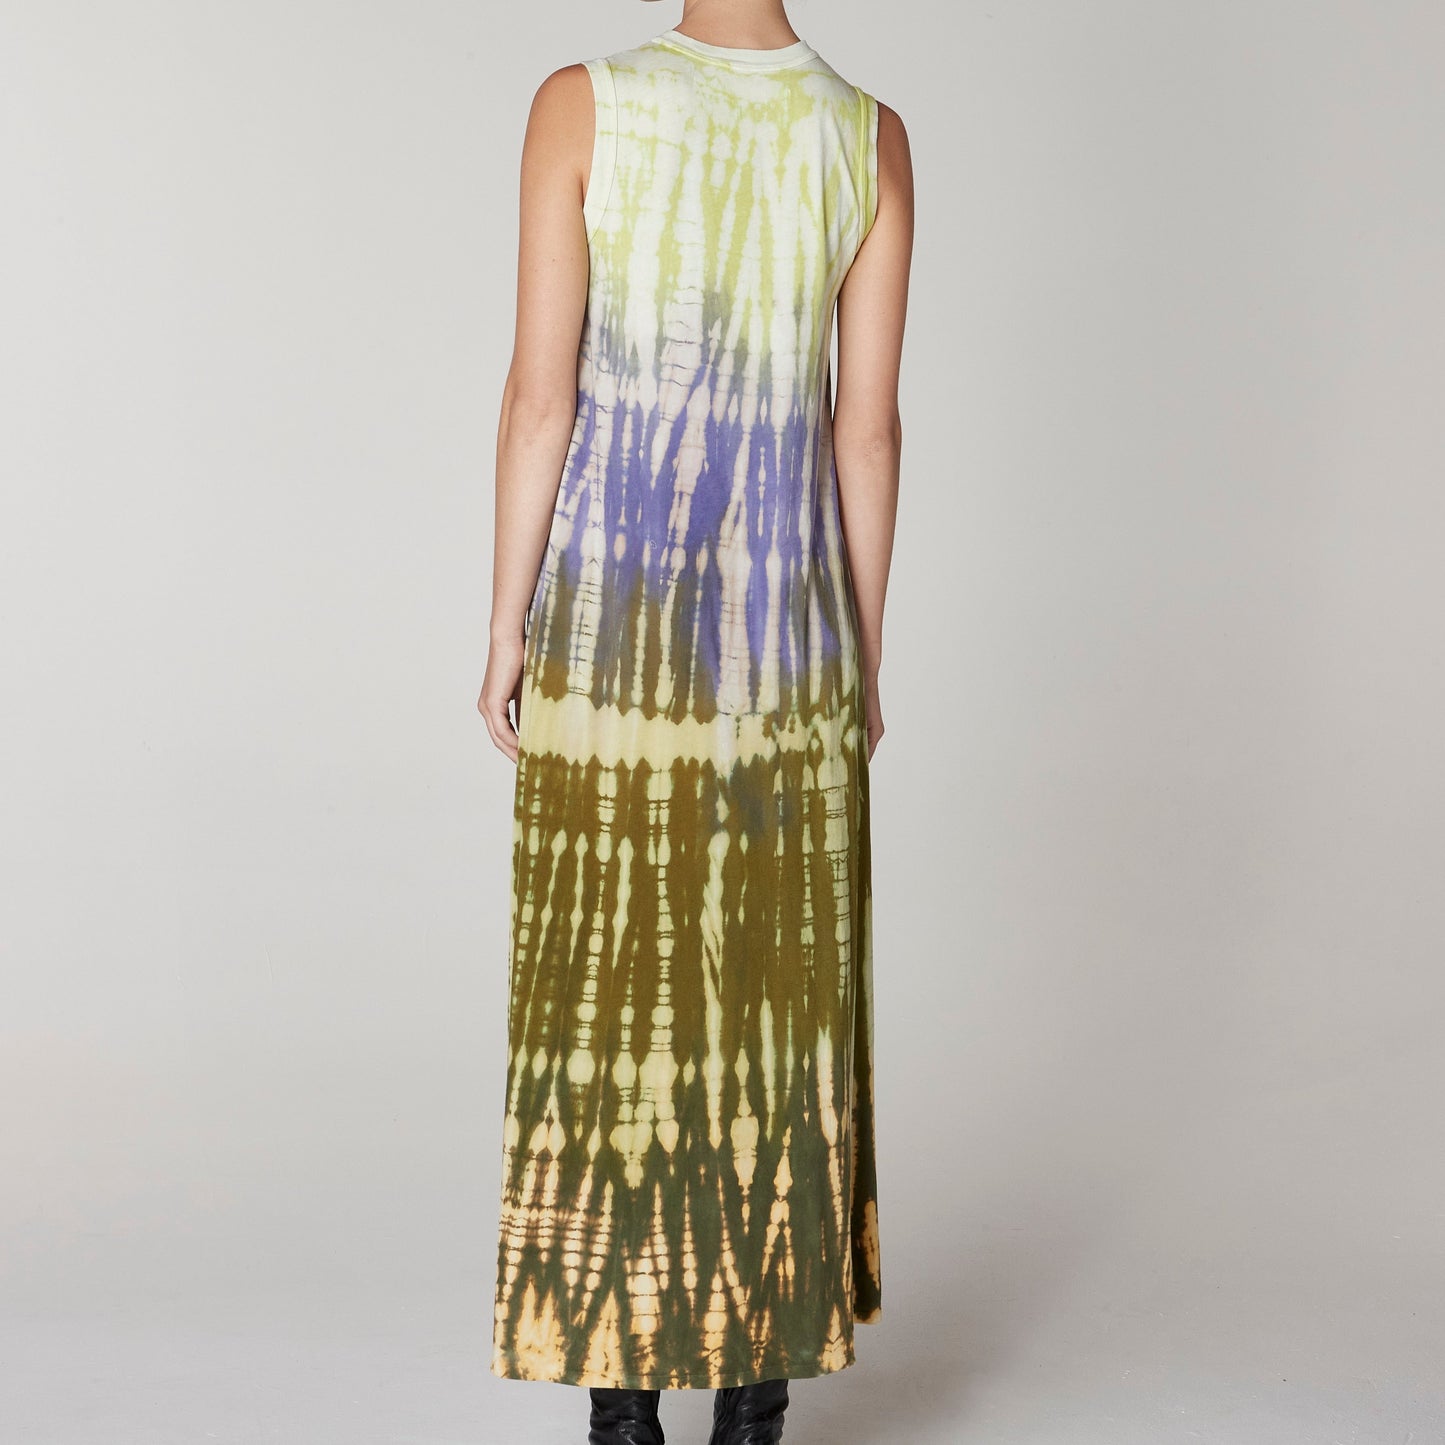 Christy Dress in Moss & Lavender Dye